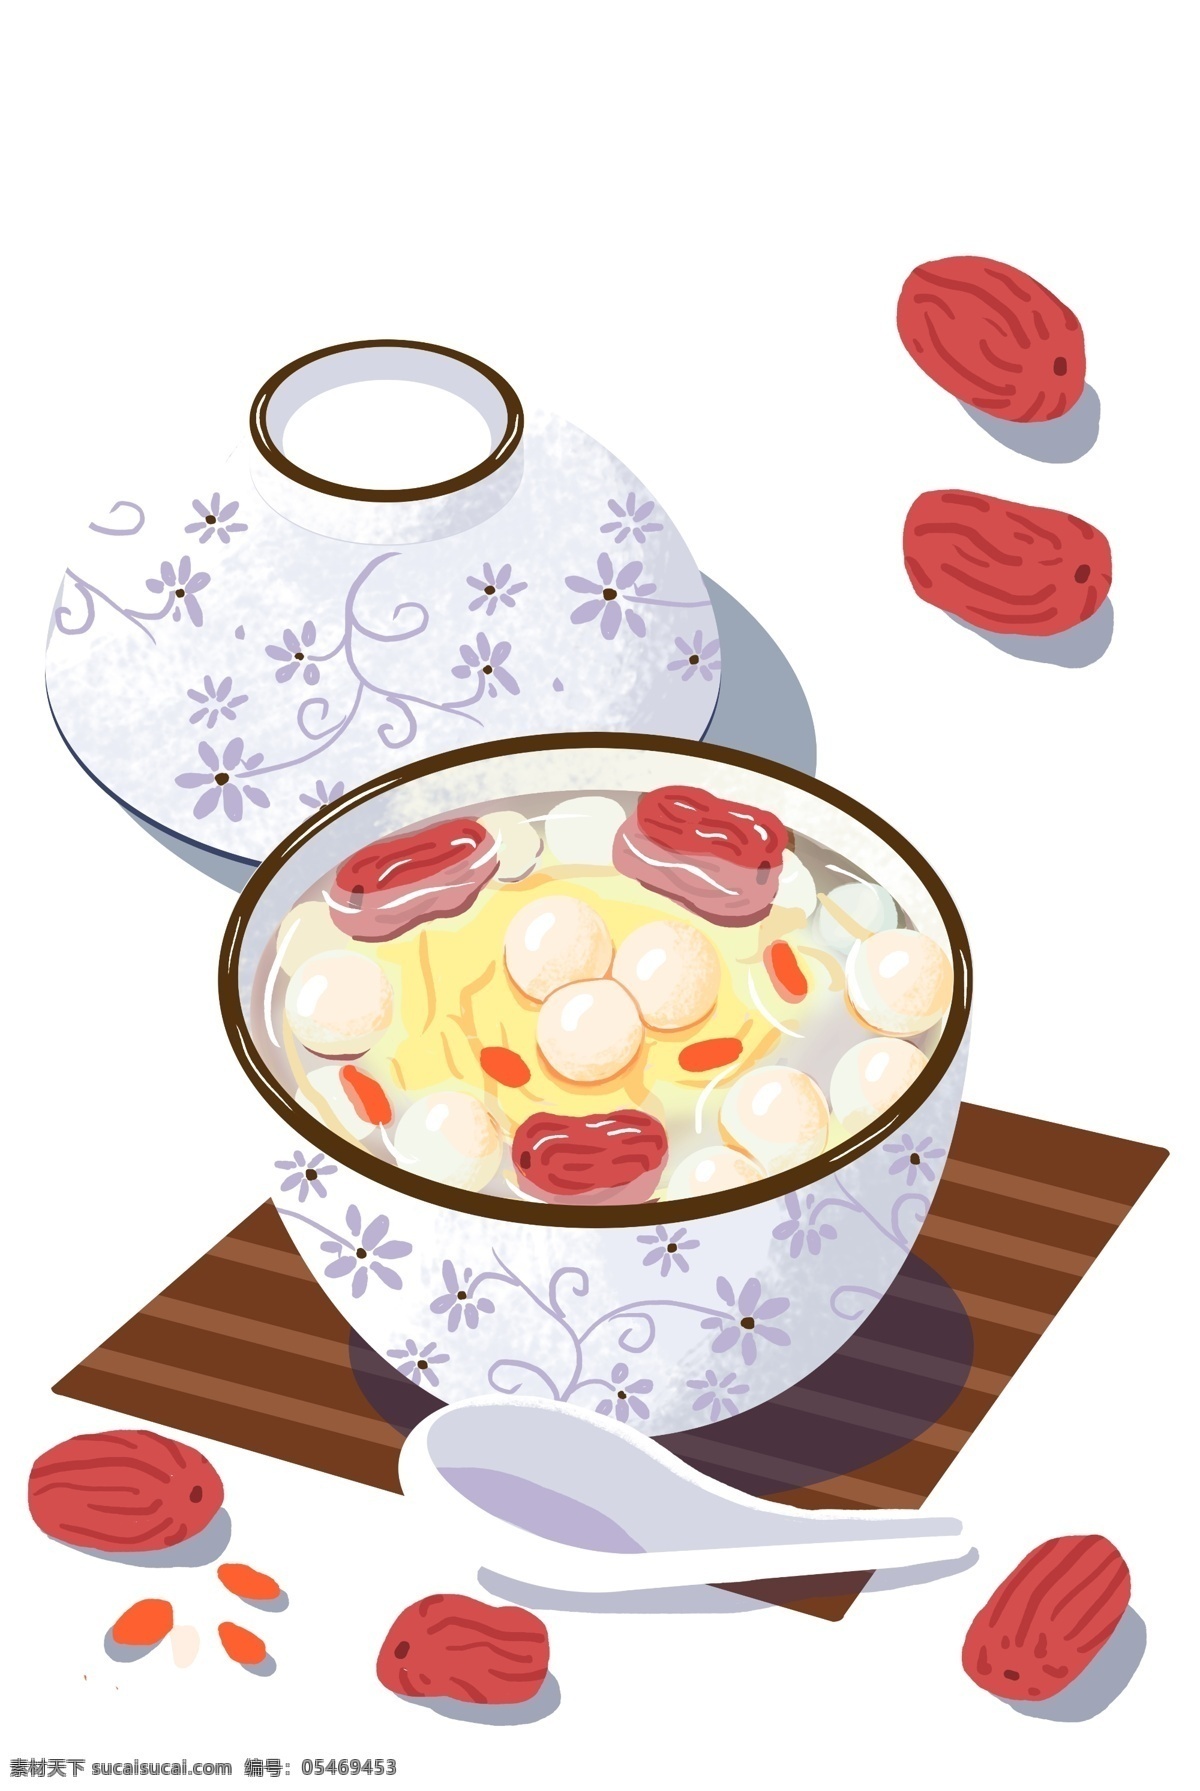 手绘 清香 甜 汤 装饰 元素 花纹餐具 装饰元素 美食 食物 手绘美食 甜枣 甜汤 清香食物